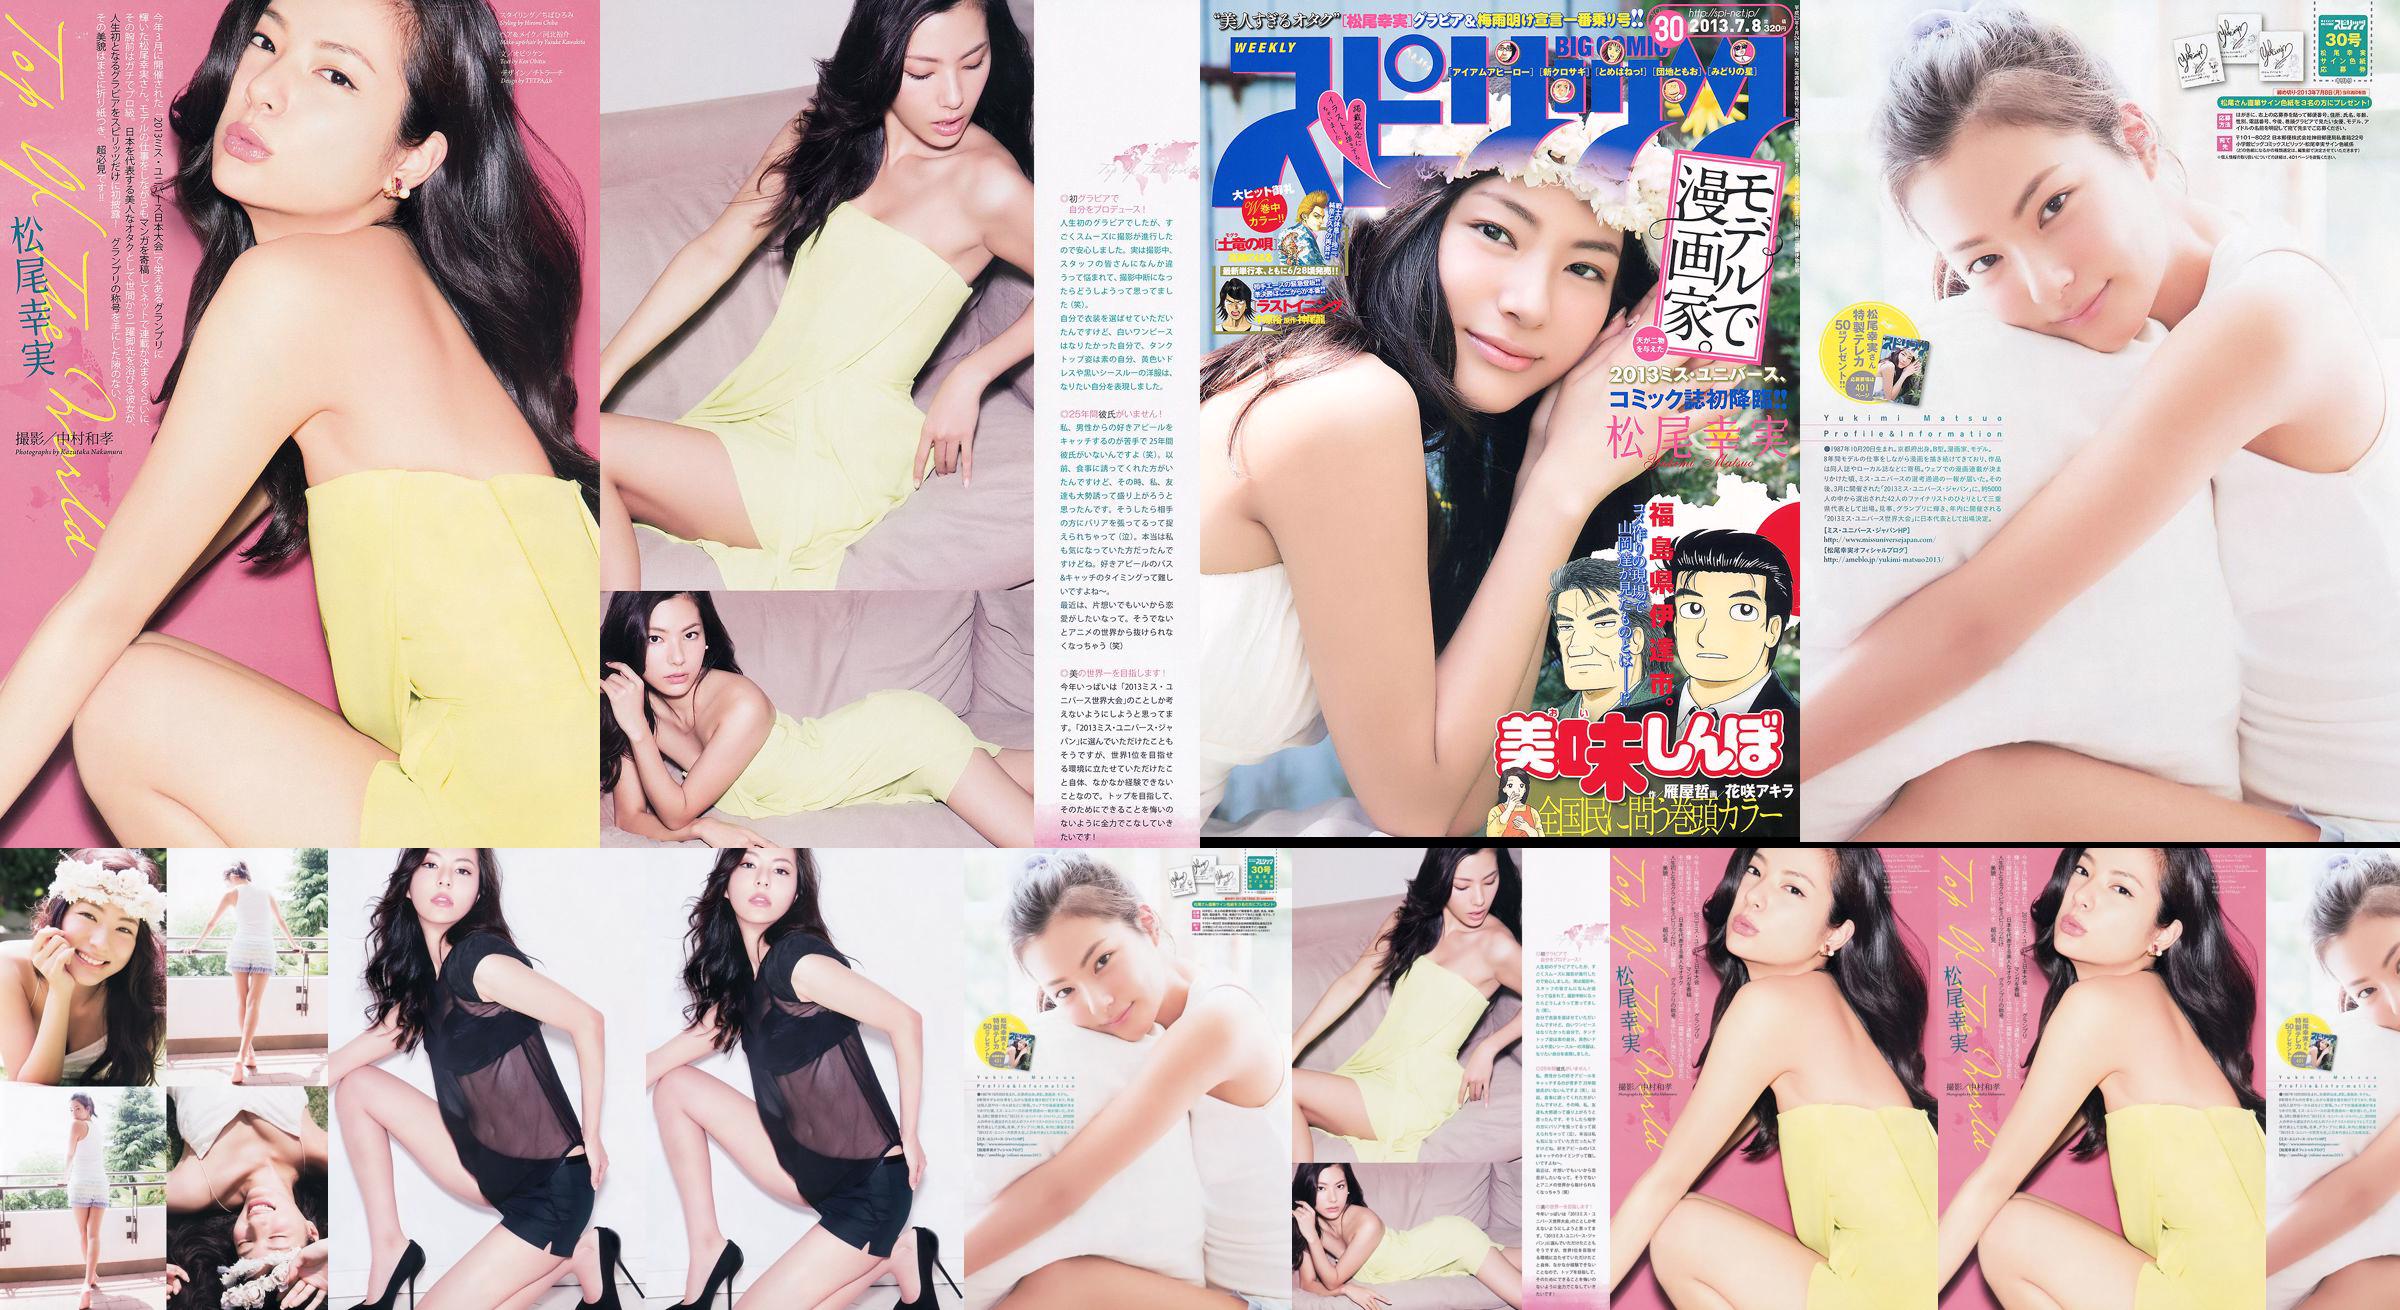 [Weekly Big Comic Spirits] Komi Matsuo 2013 No.30 Photo Magazine No.3041e4 Pagina 2